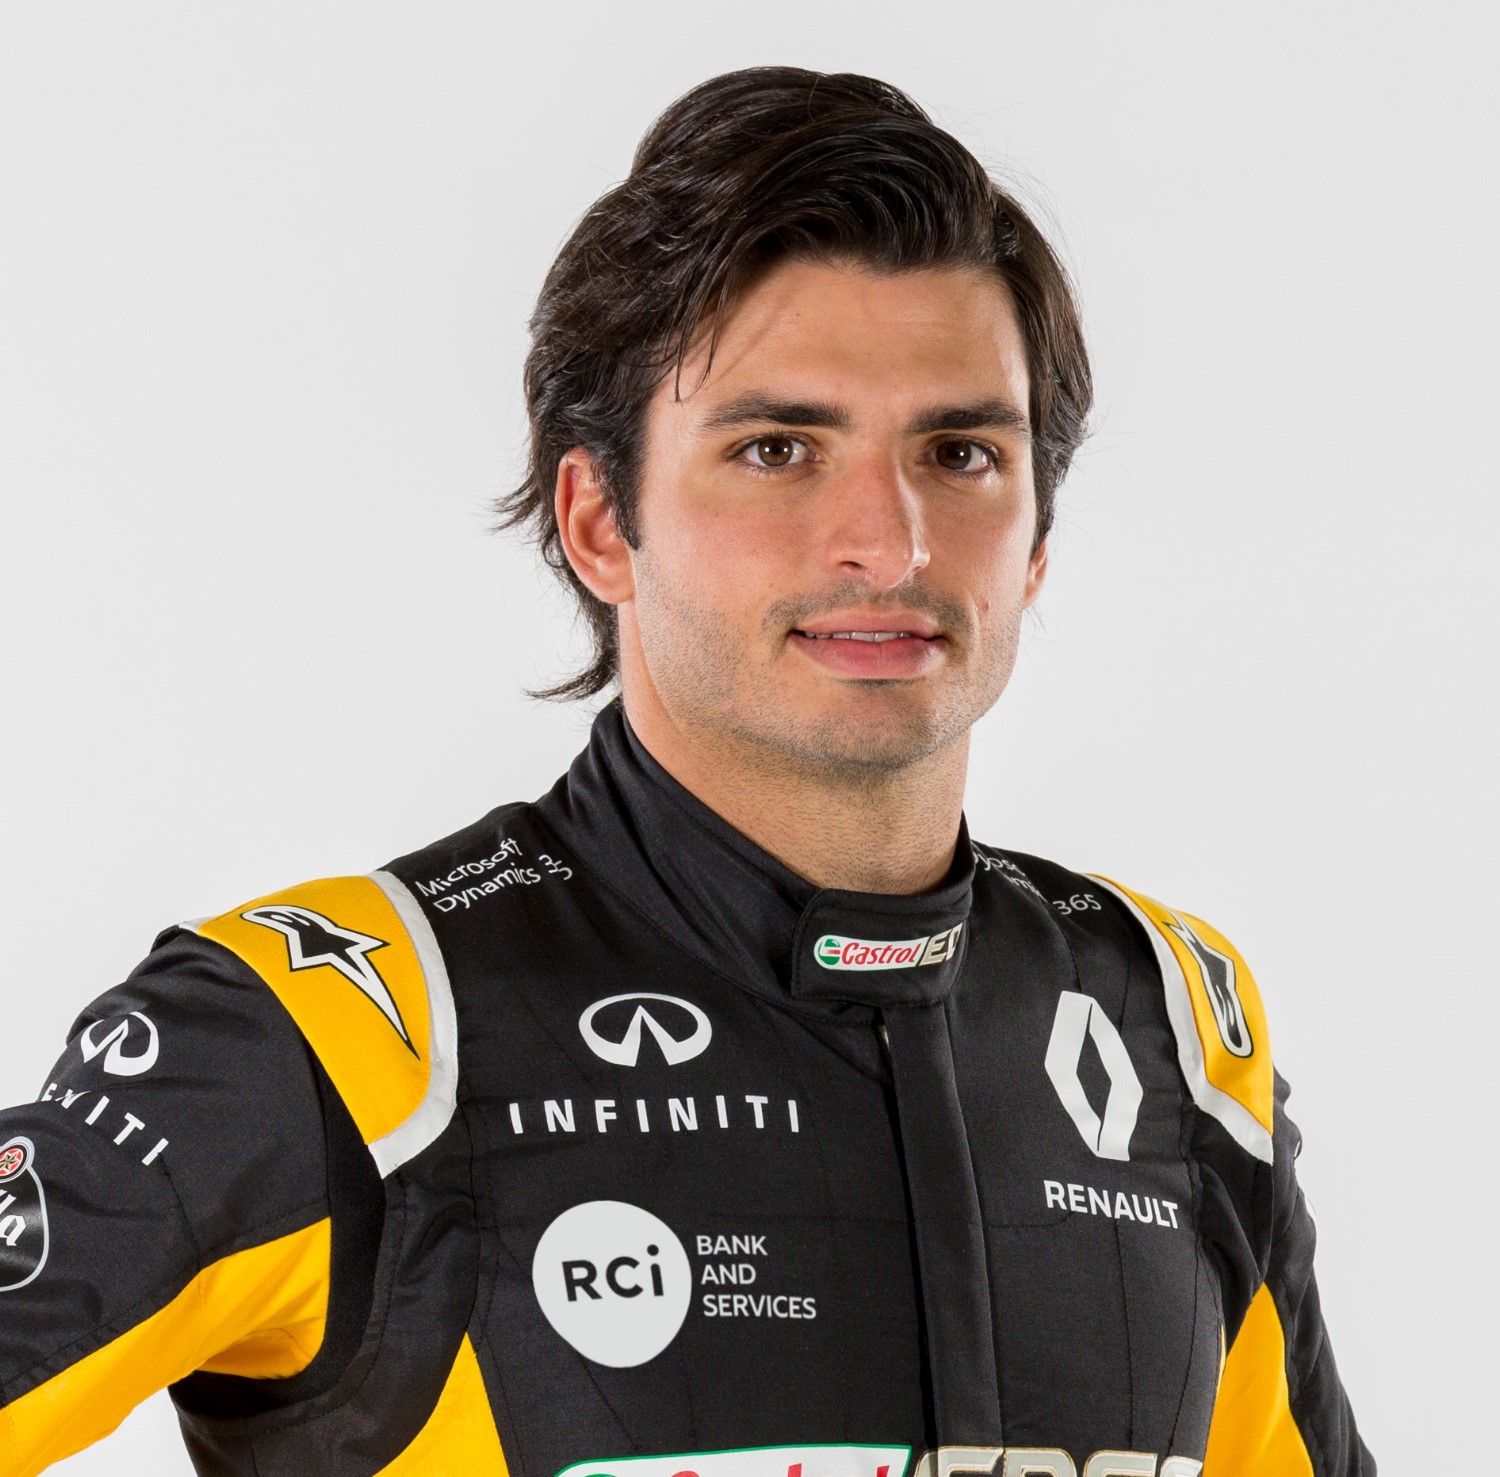 Carlos Sainz Jr. has buried teammate Hulkenburg in his first Renault outing